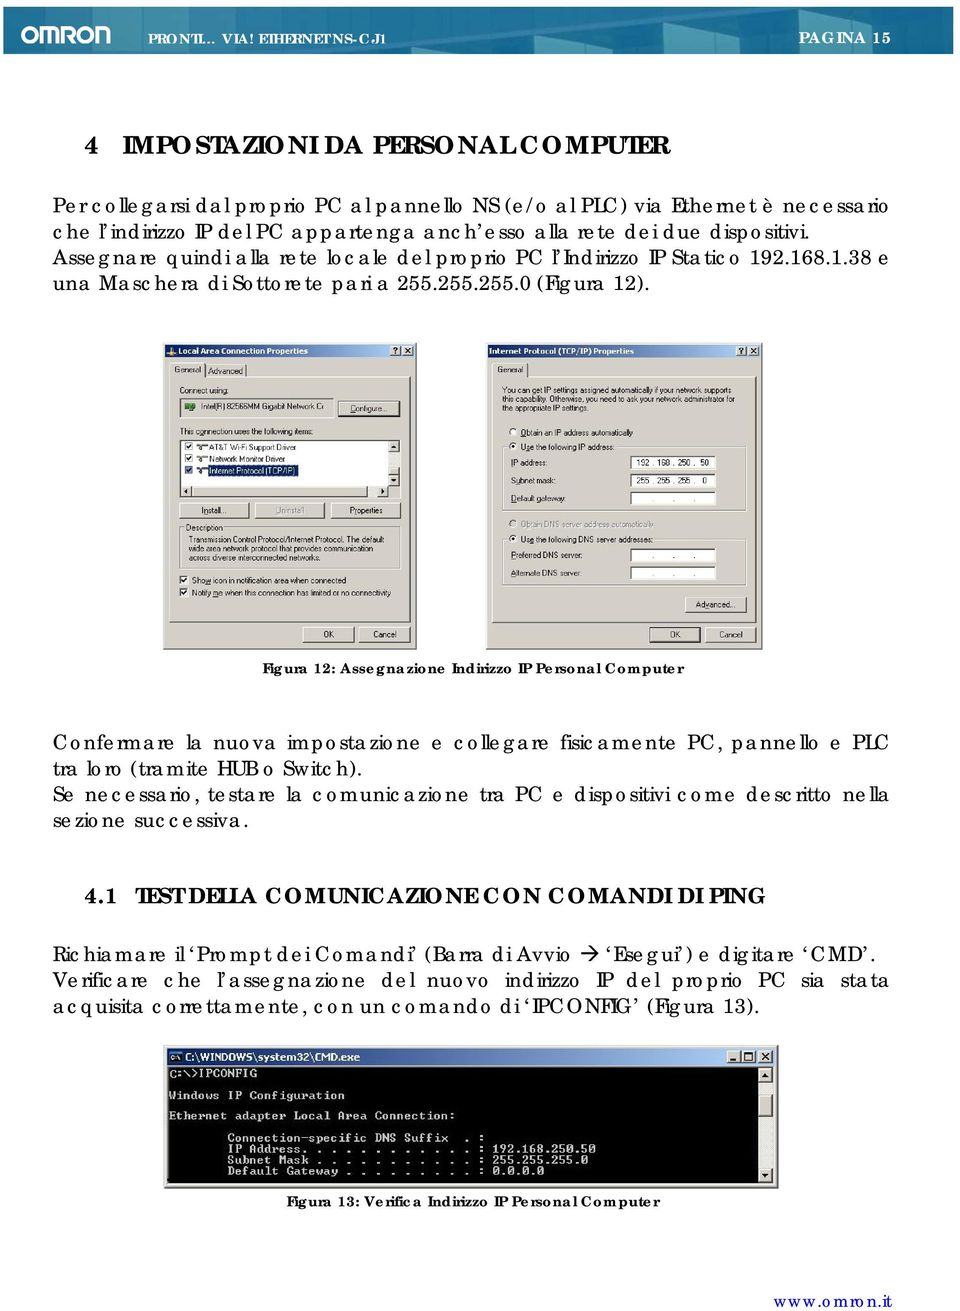 Figura 12: Assegnazione Indirizzo IP Personal Computer Confermare la nuova impostazione e collegare fisicamente PC, pannello e PLC tra loro (tramite HUB o Switch).